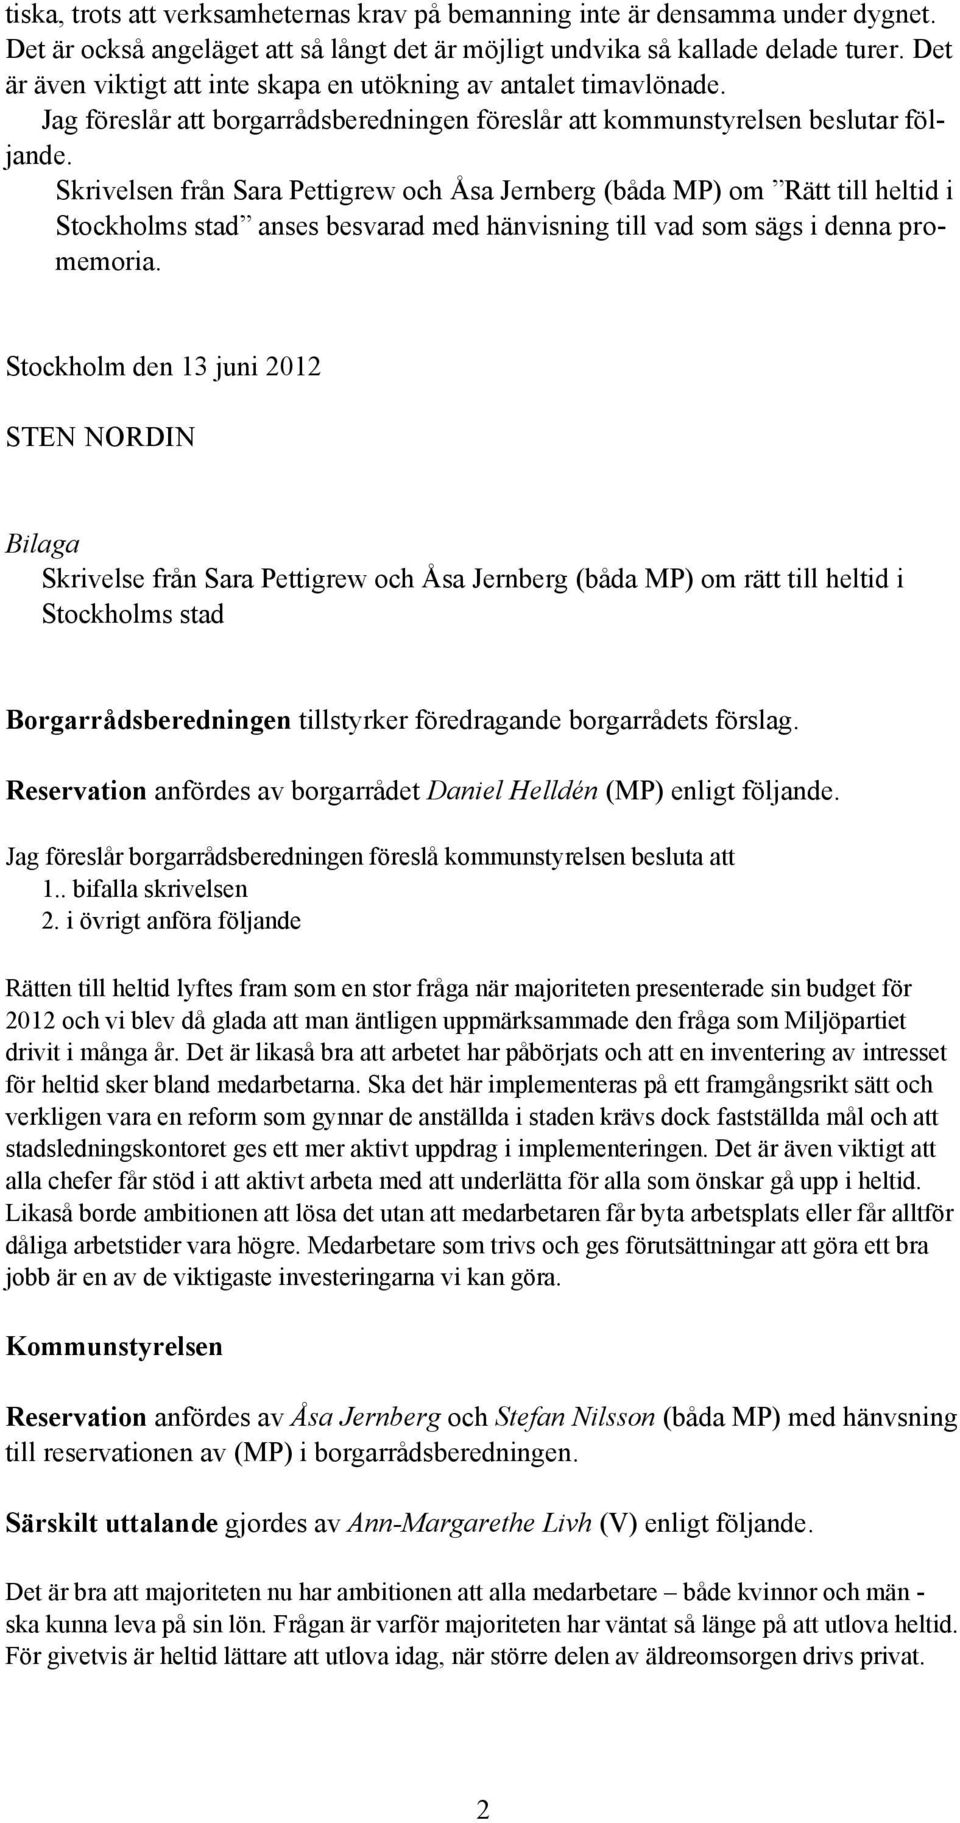 Skrivelsen från Sara Pettigrew och Åsa Jernberg (båda MP) om Rätt till heltid i Stockholms stad anses besvarad med hänvisning till vad som sägs i denna promemoria.